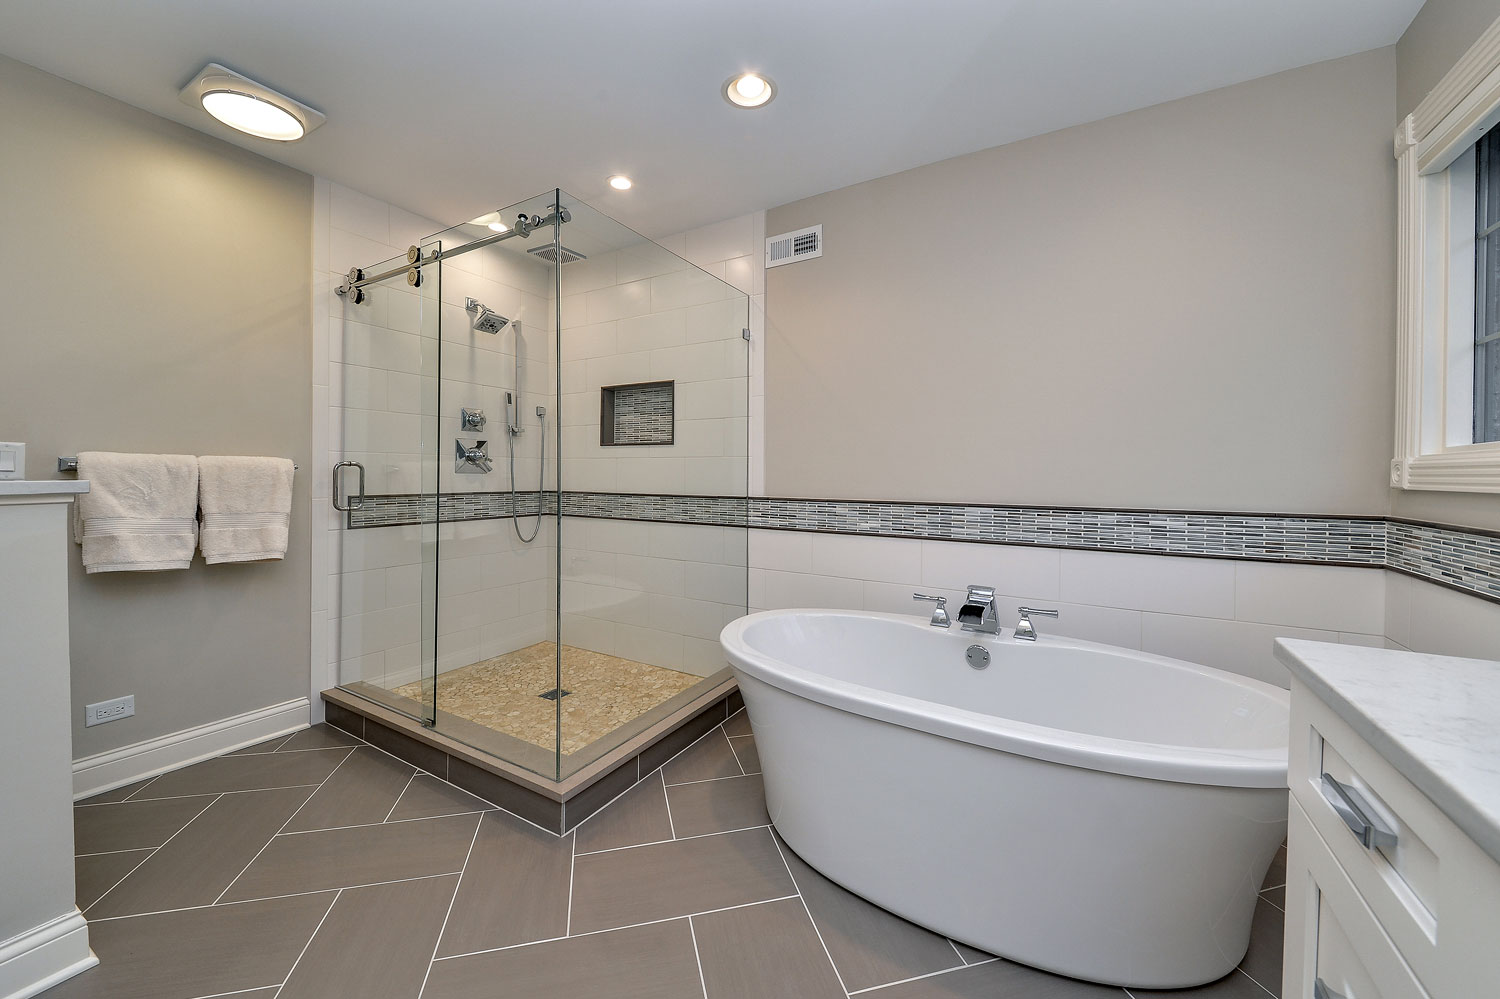 Hinsdale Master Bathroom Remodeling Project - Sebring Design Build